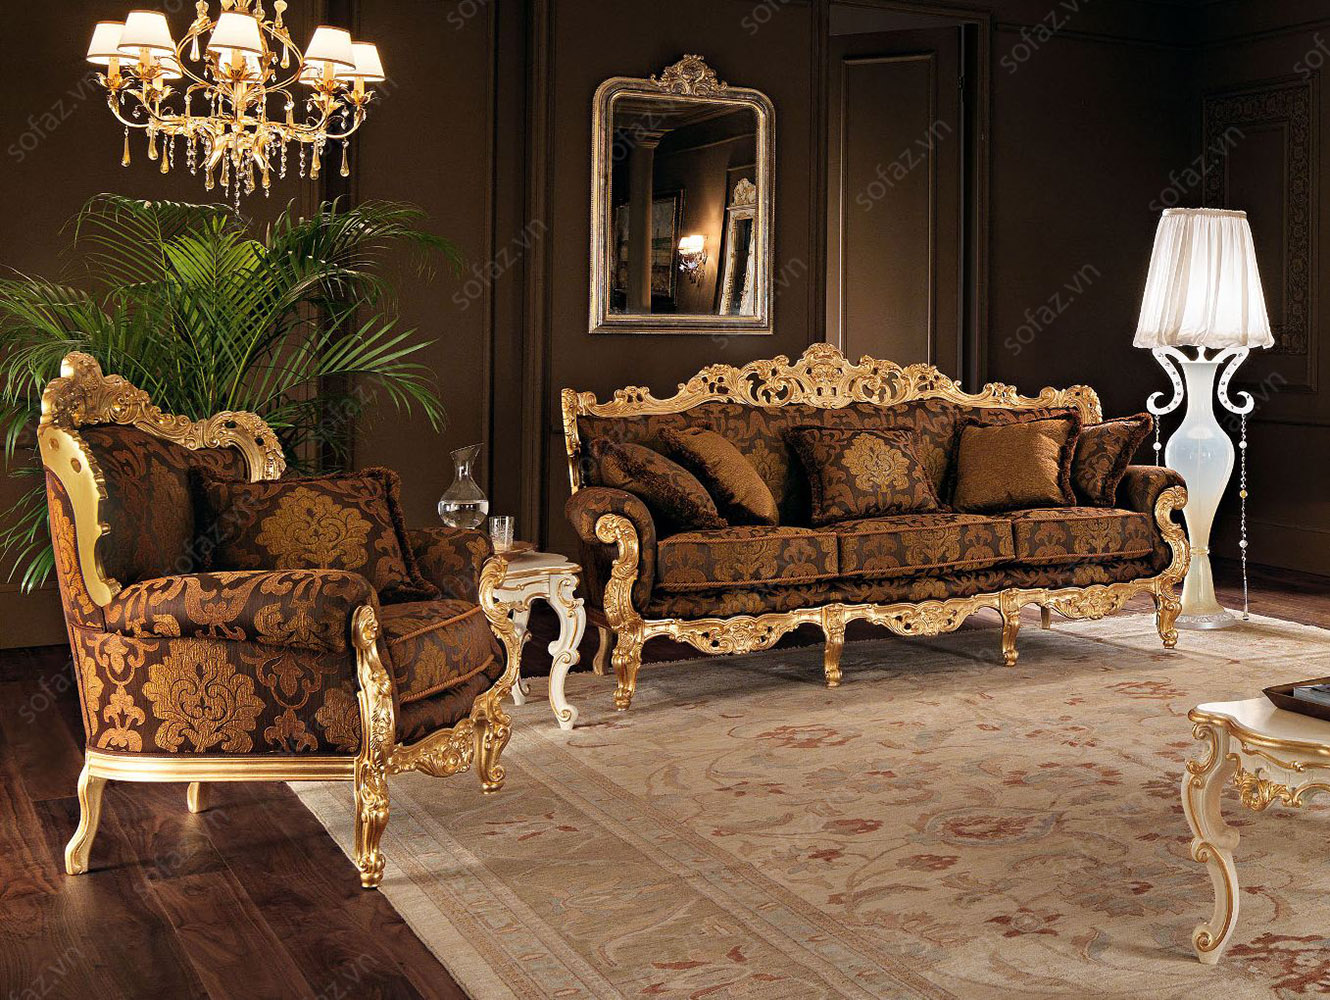 Sofa phòng khách Cổ điển sang trọng: Sự kết hợp hoàn hảo giữa phong cách cổ điển và sự sang trọng đã được thể hiện tốt nhất trong chiếc Sofa phòng khách Cổ điển này. Một lựa chọn hoàn hảo để tôn vinh không gian sống của bạn, điểm nhấn tuyệt vời để thu hút sự chú ý và làm nổi bật phong cách của bạn.